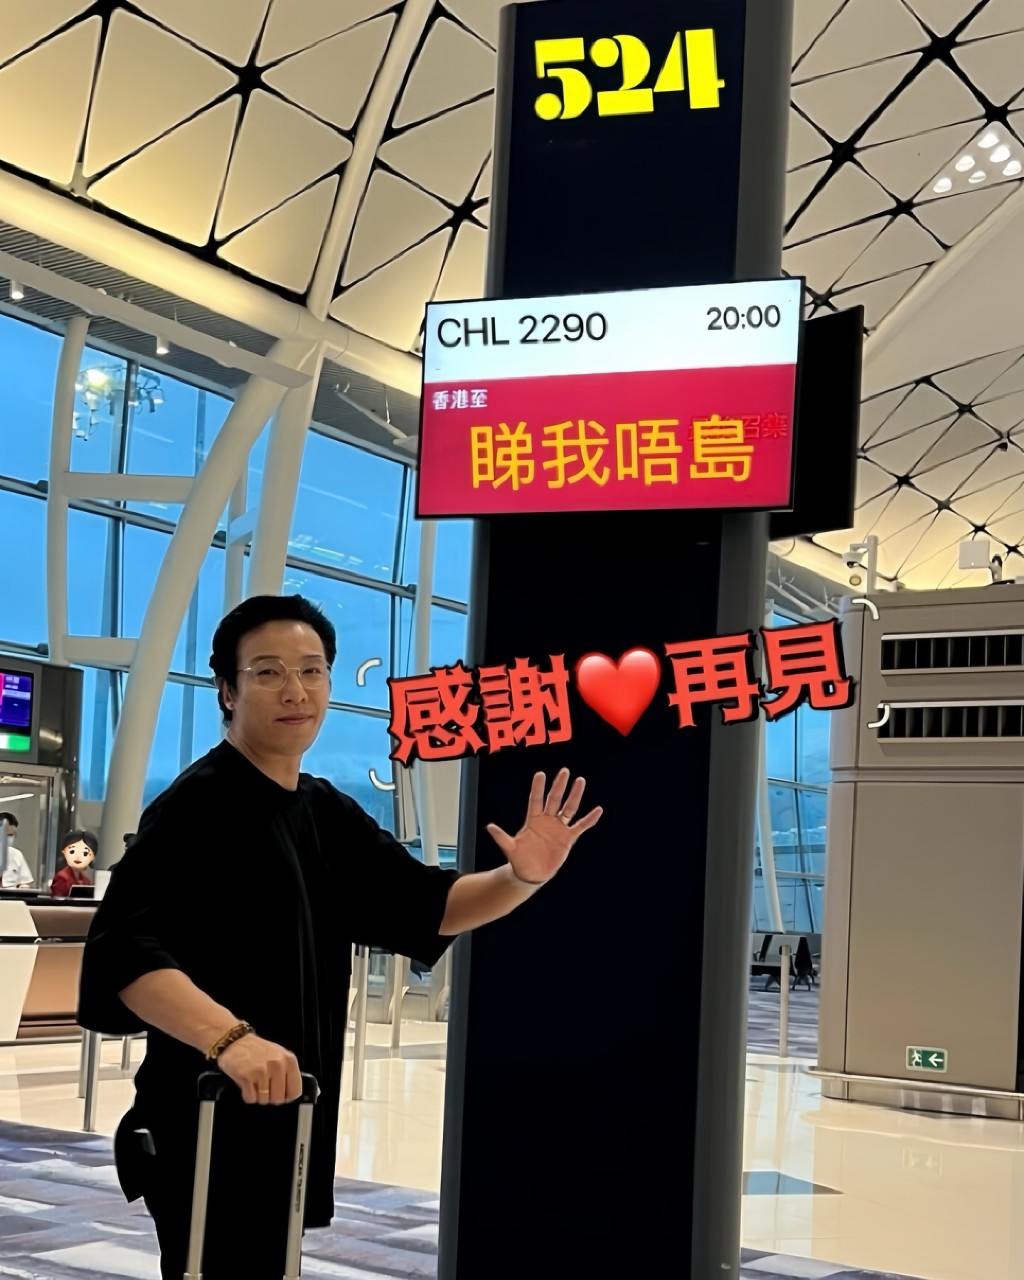 郑世豪附上一张离港登机照，当中荧幕显示的目的地恶搞为“睇我唔岛”。